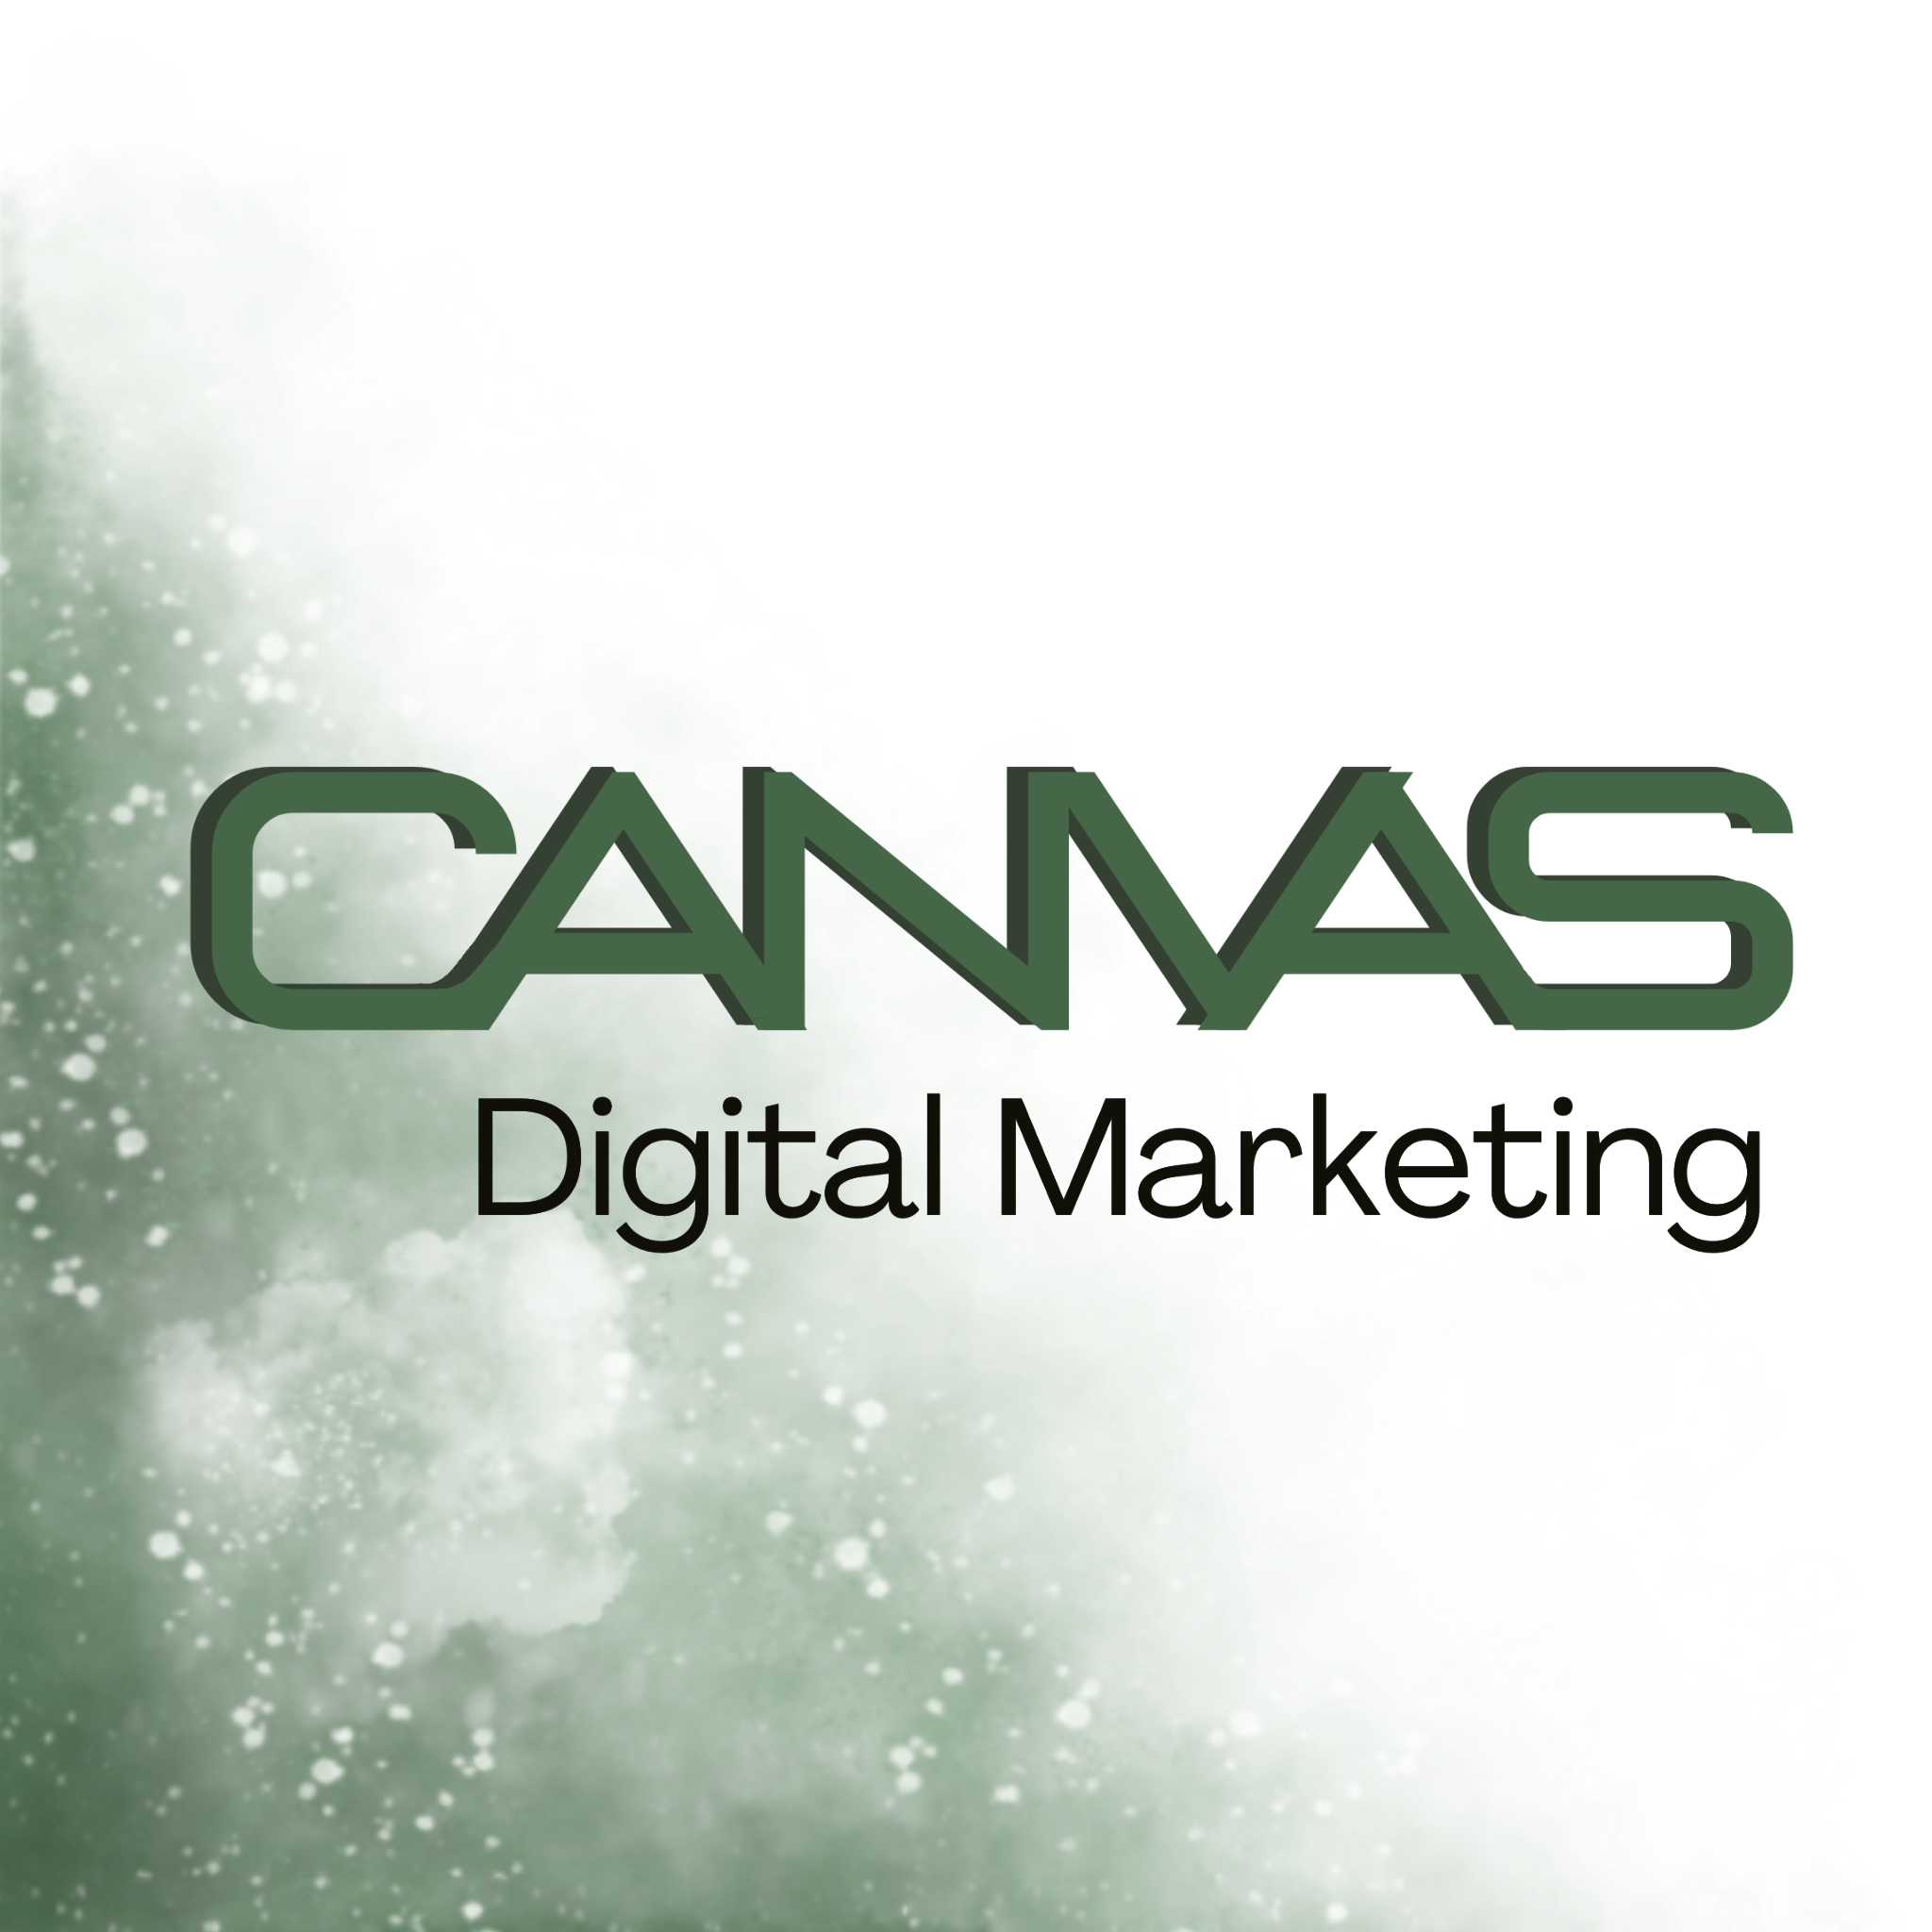 canvas-digital-marketing